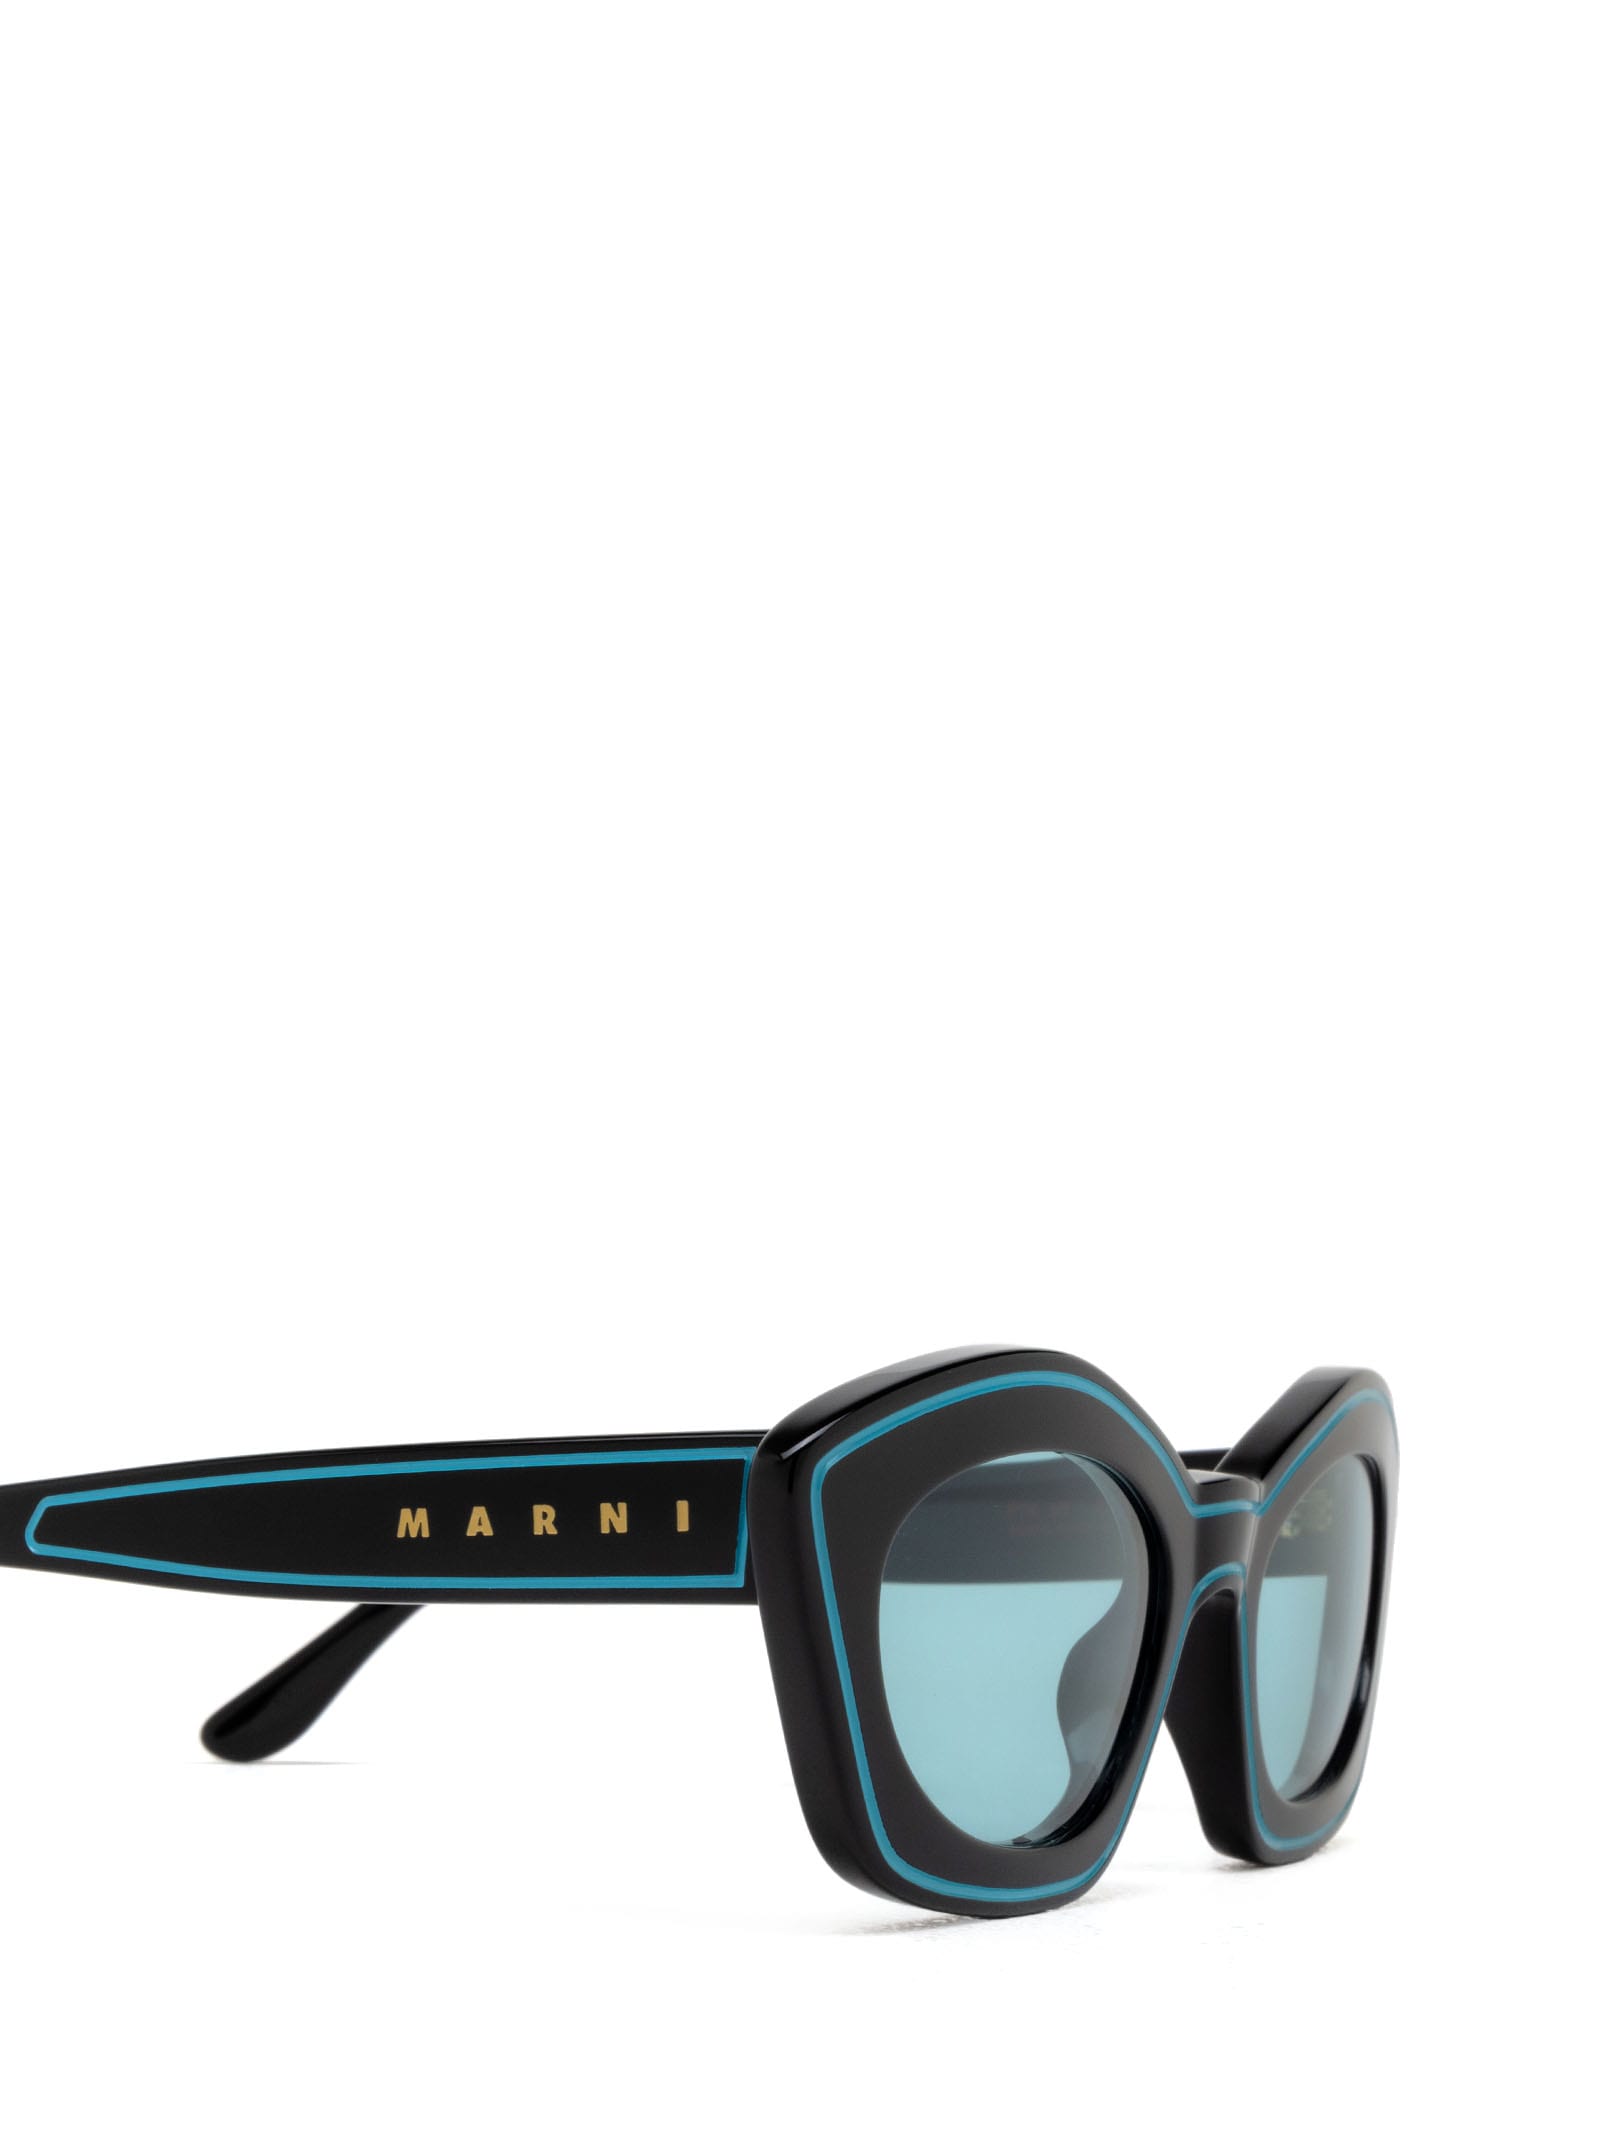 Shop Marni Eyewear Kea Island Teal Teal Sunglasses